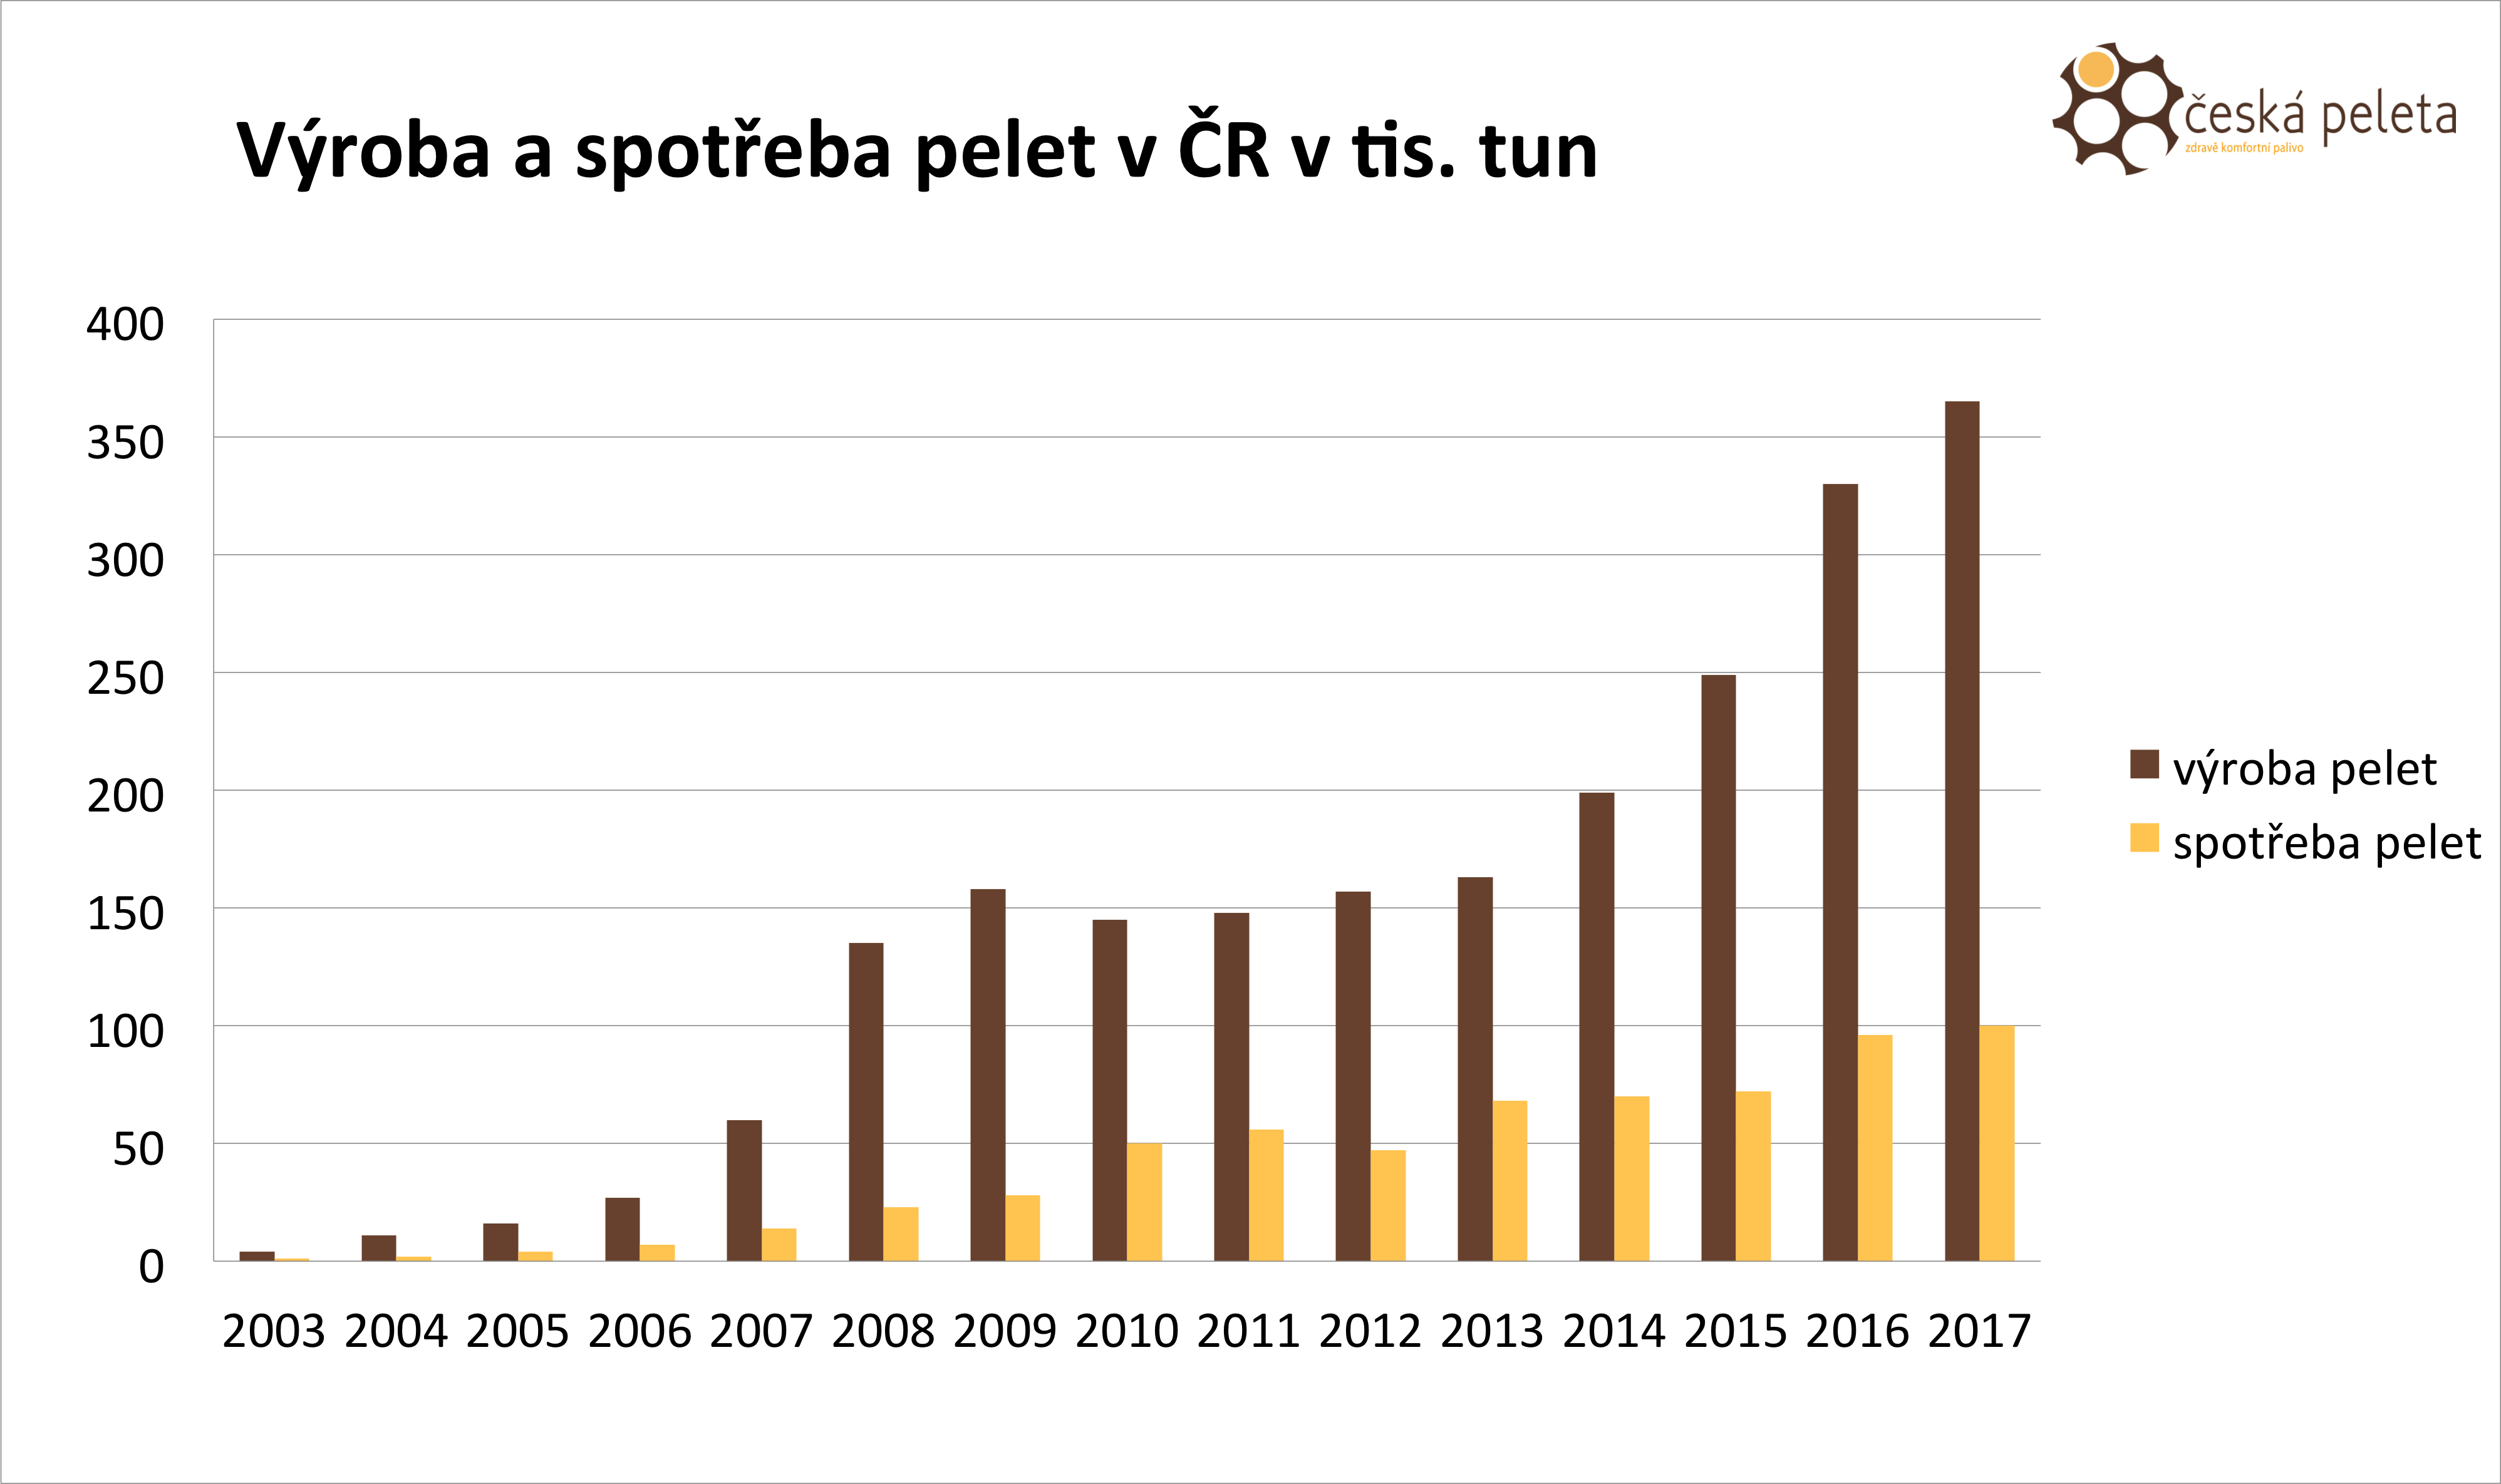 Výroba dřevních pelet trhá rekordy- vytápění dřevními peletami je stále populárnější